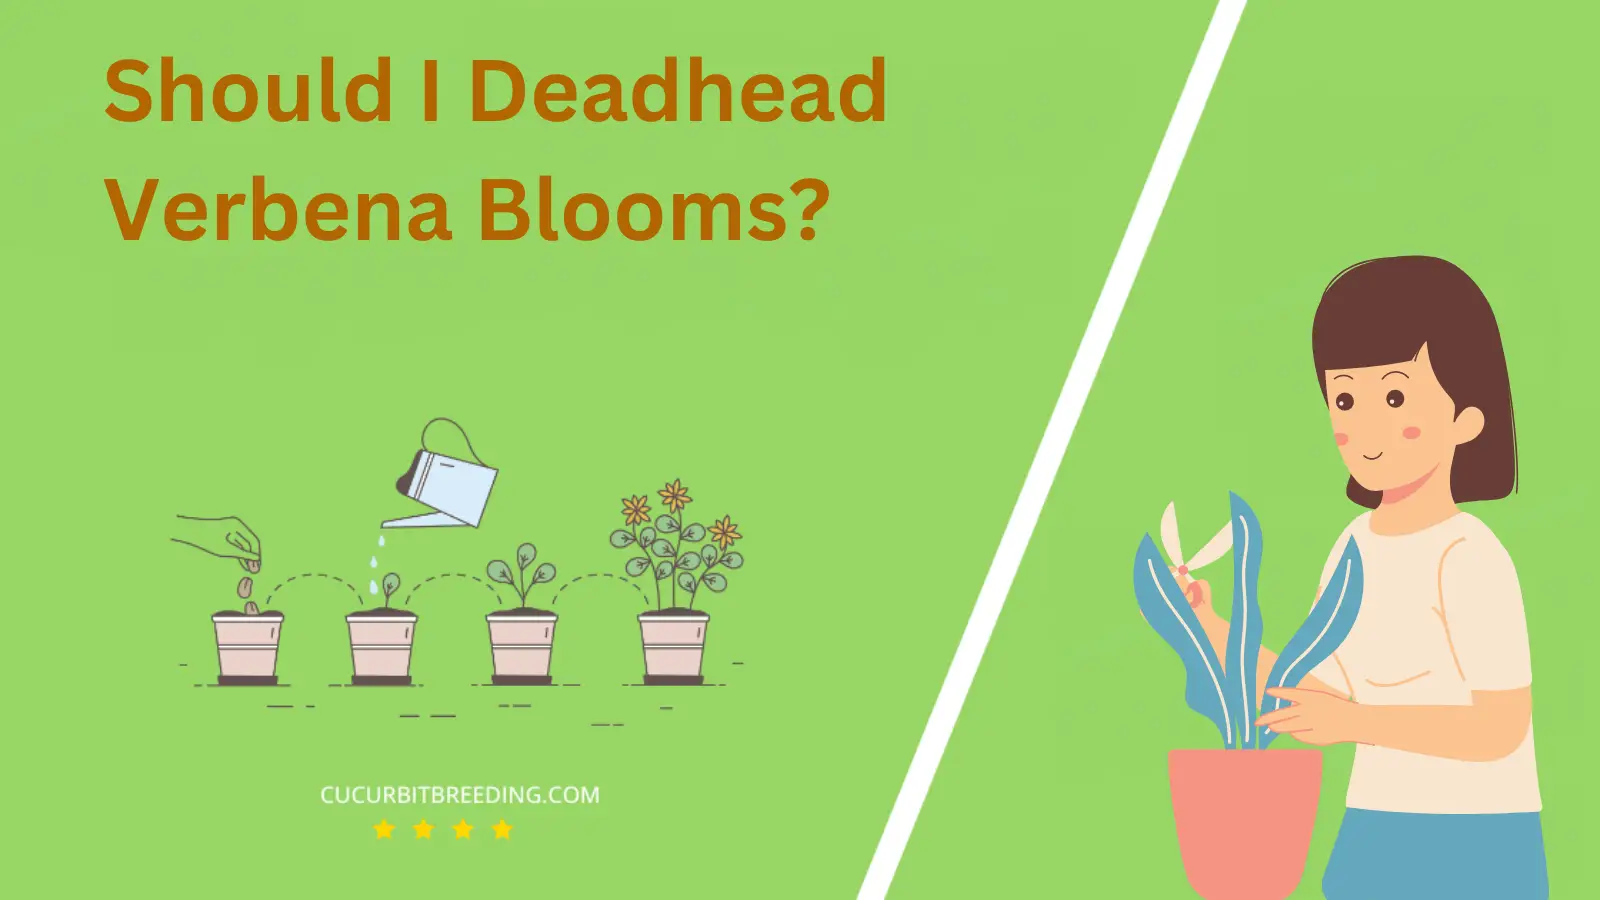 Should I Deadhead Verbena Blooms?